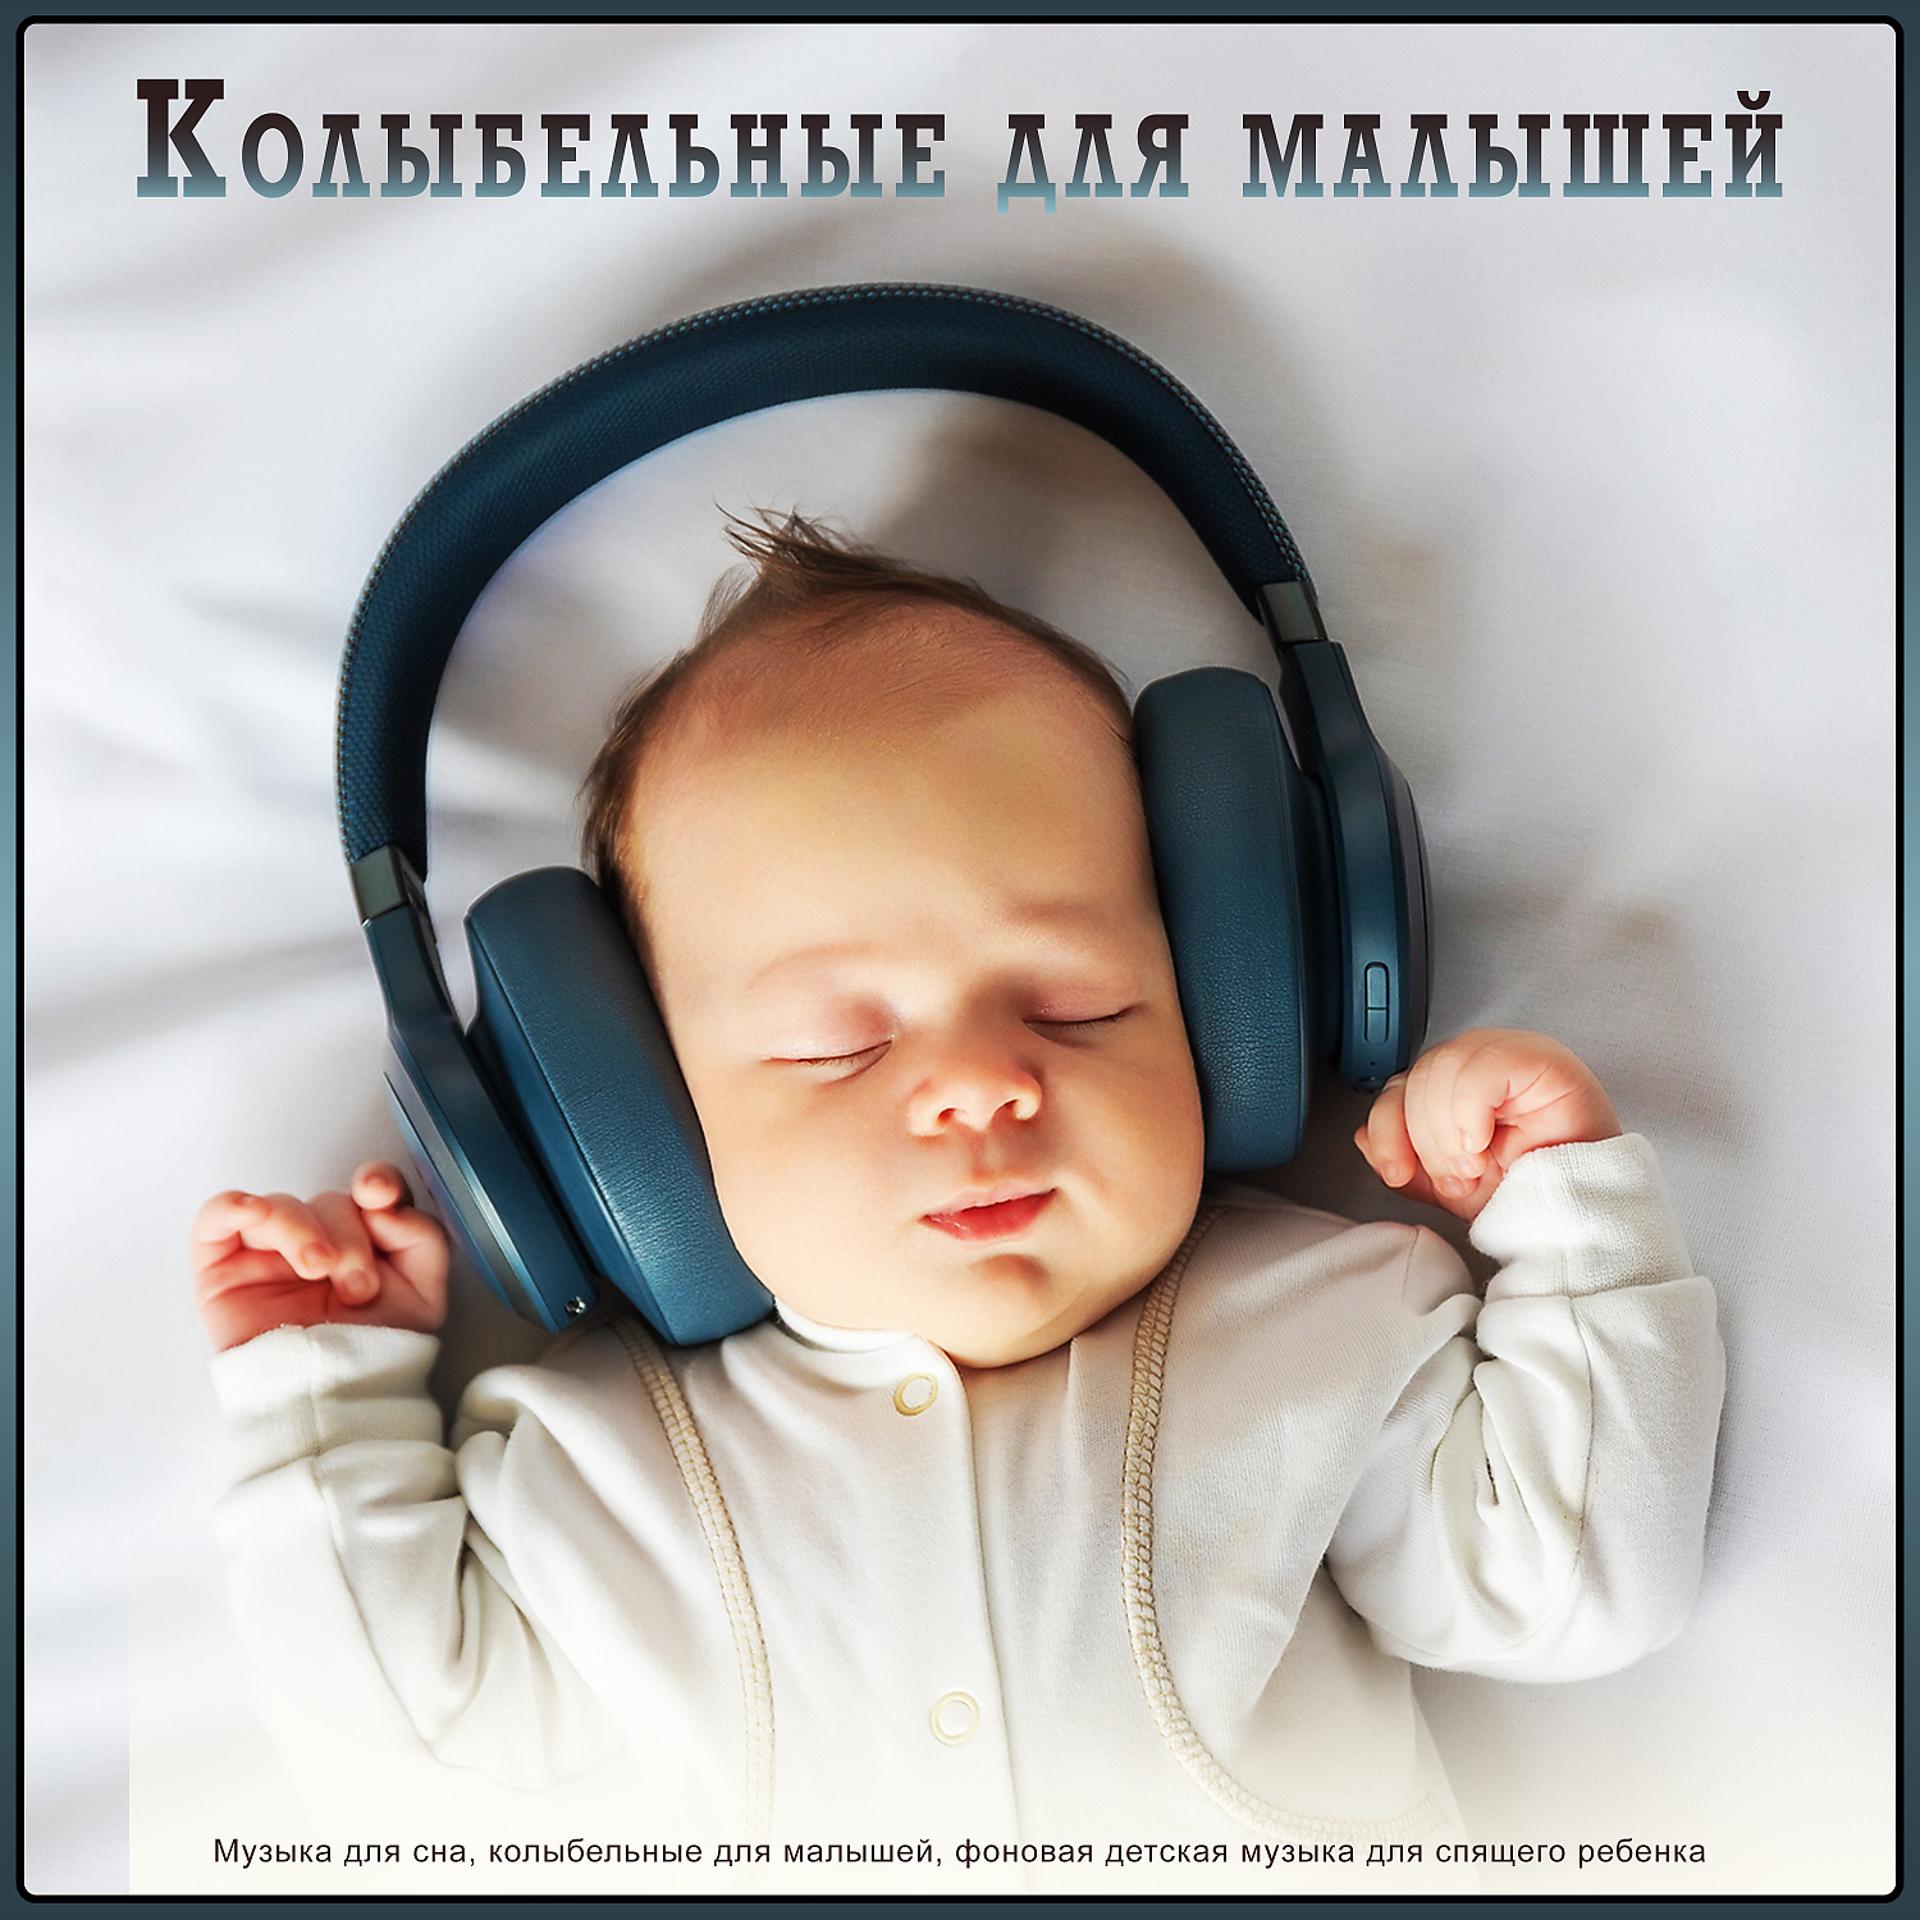 Музыка для сна младенца. Музыка для сна для малышей. Мелодии для засыпания малышей. Колыбельная для малышей успокаивающая. Музыка для засыпания в детском